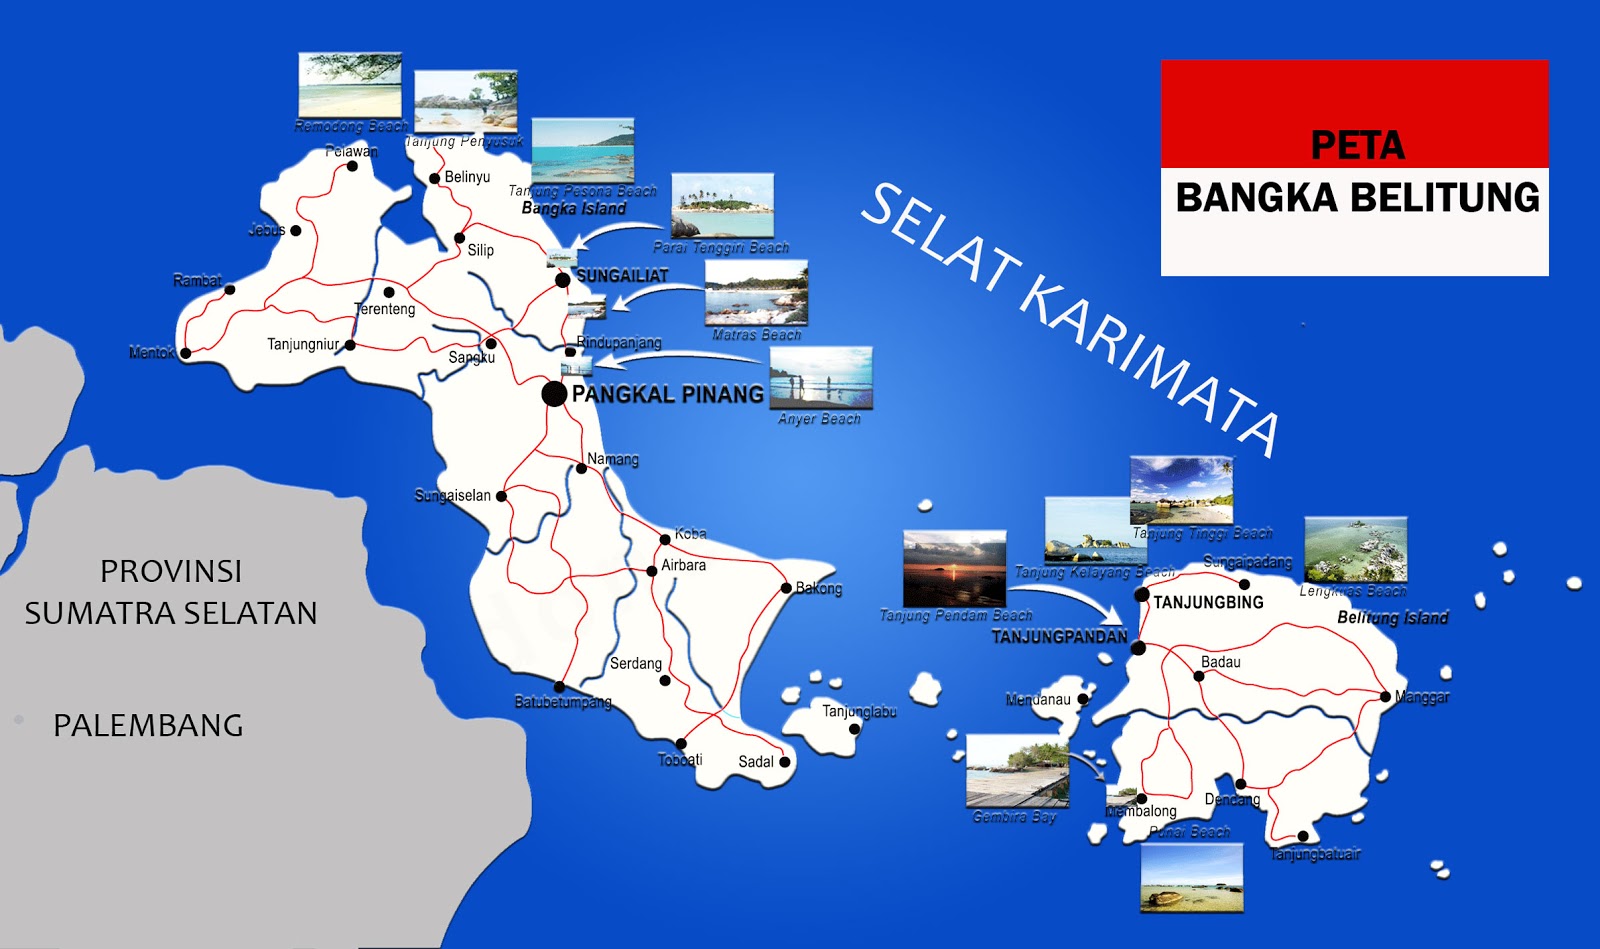  Peta  Bangka Belitung  Lengkap 6 Kabupaten 1 Kota Sejarah 